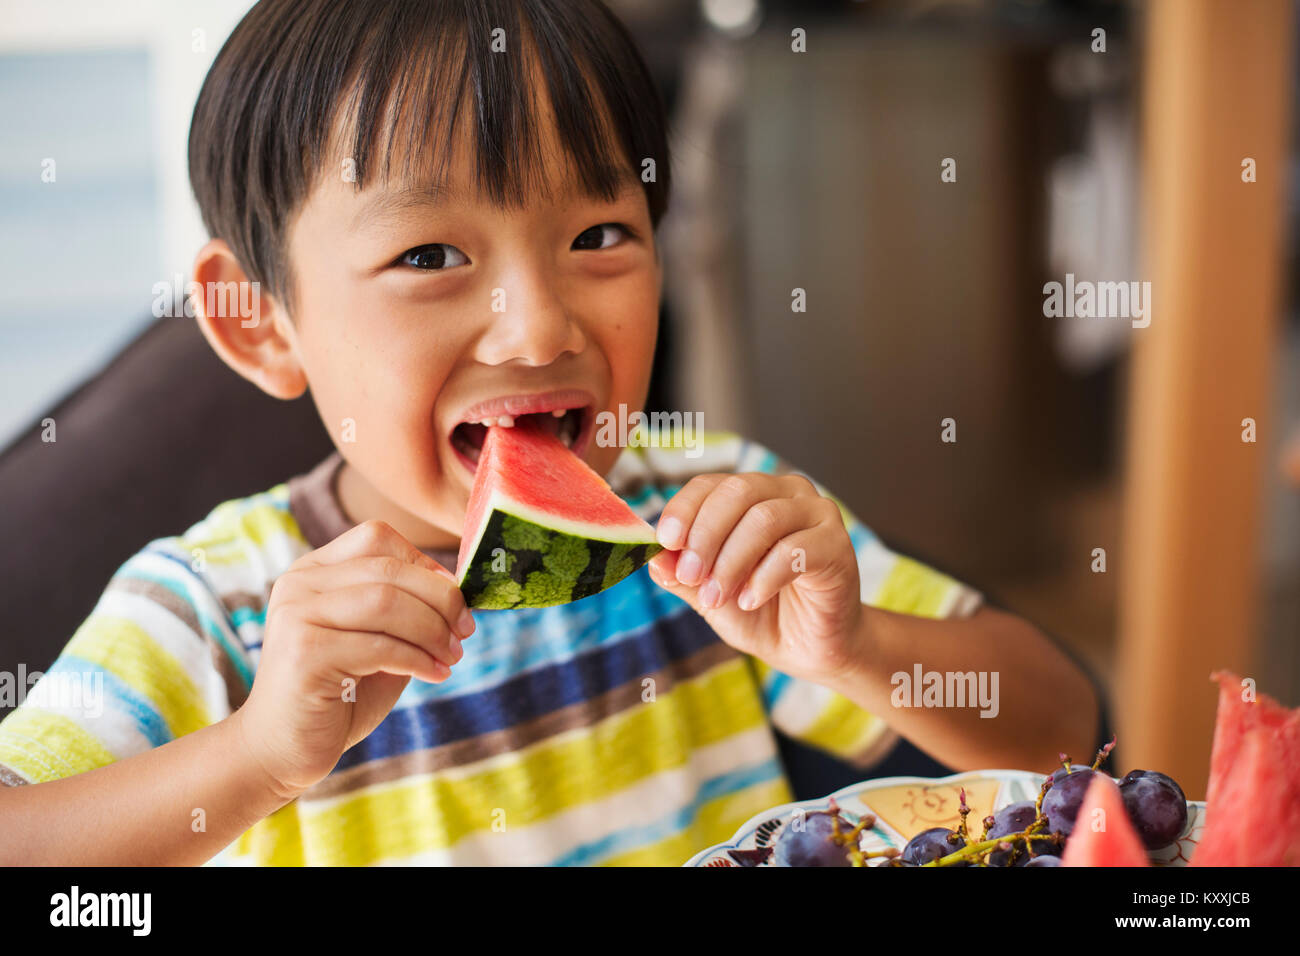 Der Junge mit den schwarzen Haaren tragen gestreifte T-Shirt essen ein Stück Wassermelone. Stockfoto